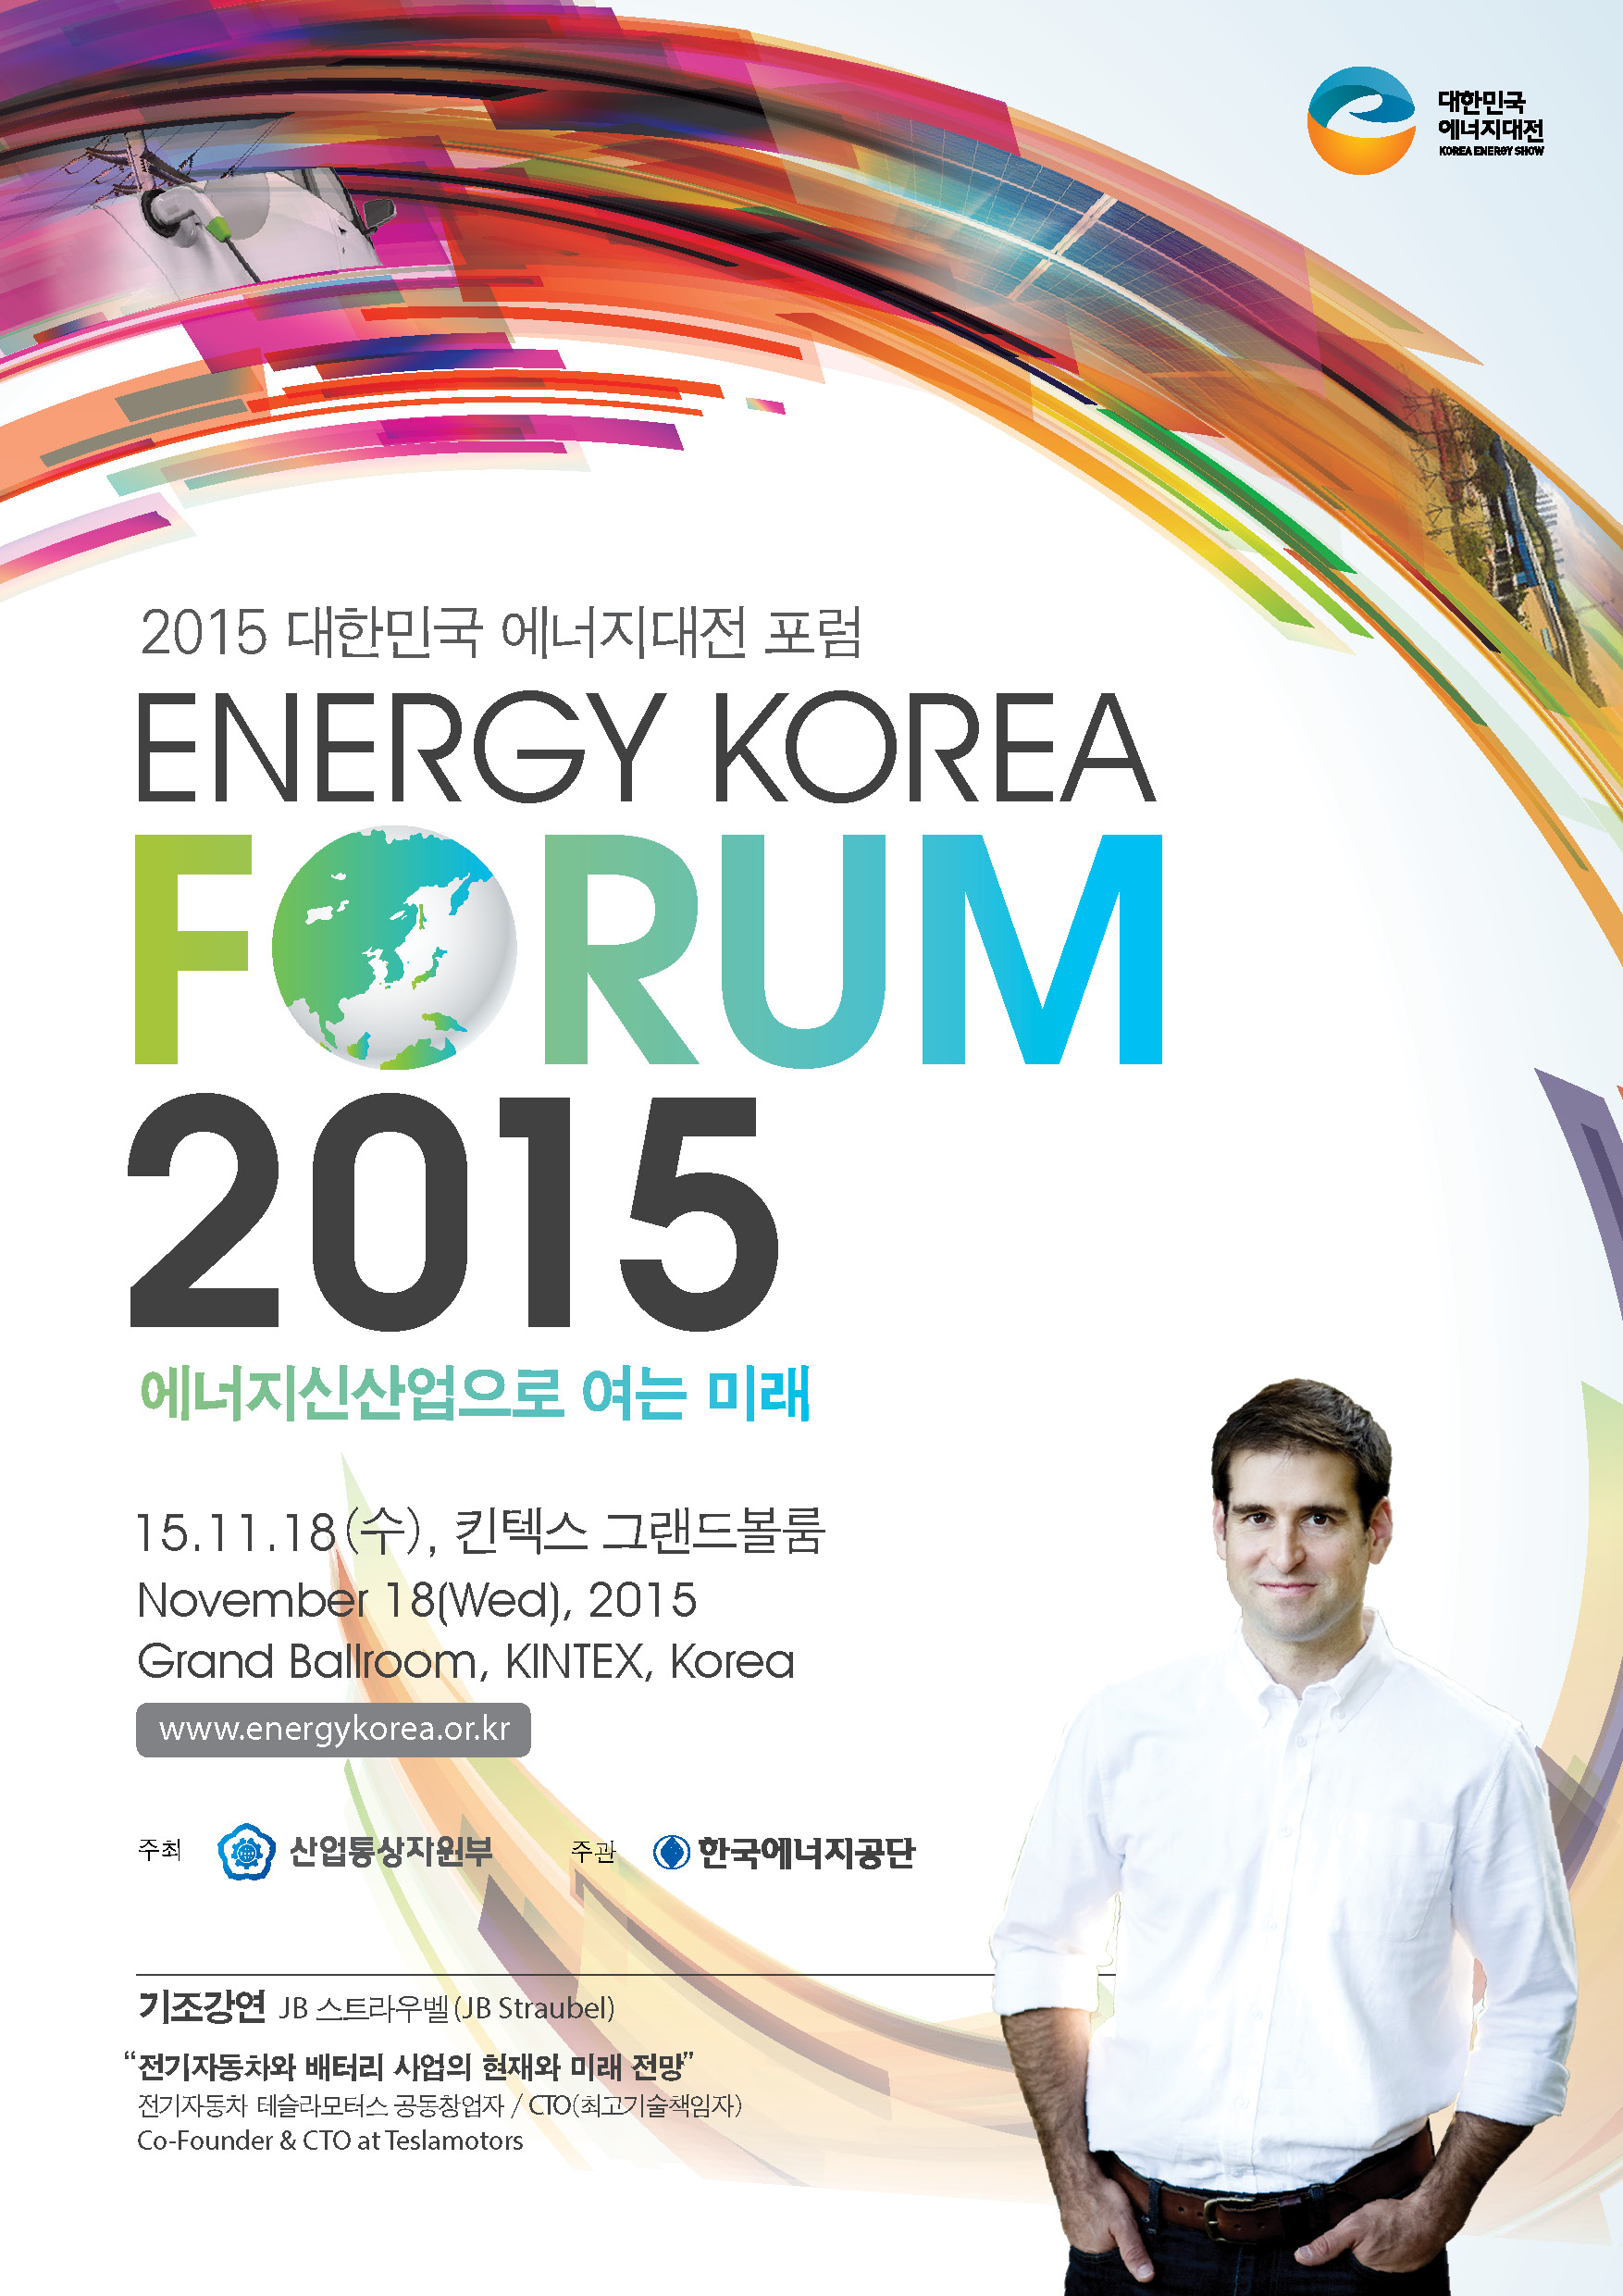 2015 대한민국 에너지대전 포럼 ENERGY KOREA FORUM2015 에너지신산업으로 여는 미래